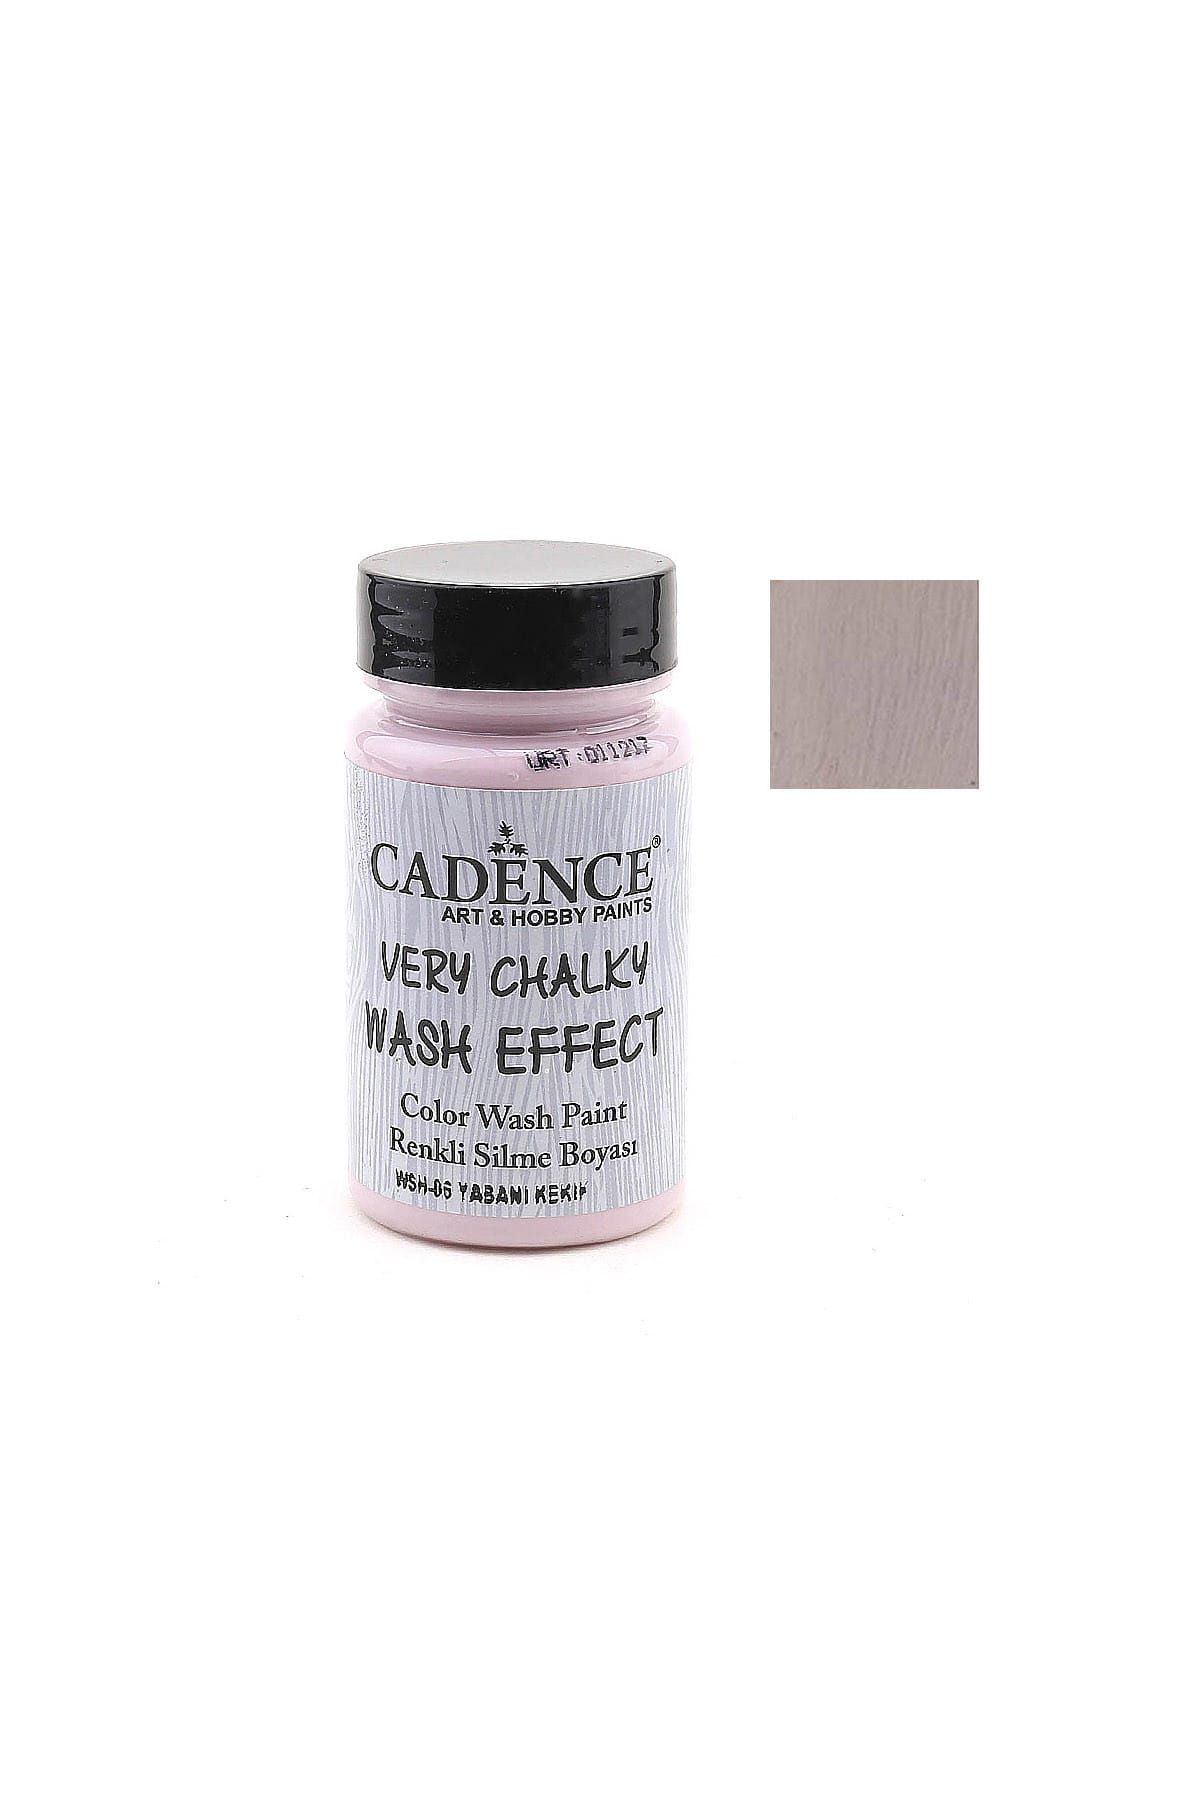 Cadence Wash Effect Renkli Silme Boyası 90ml  - WSH-06 Yabani Kekik